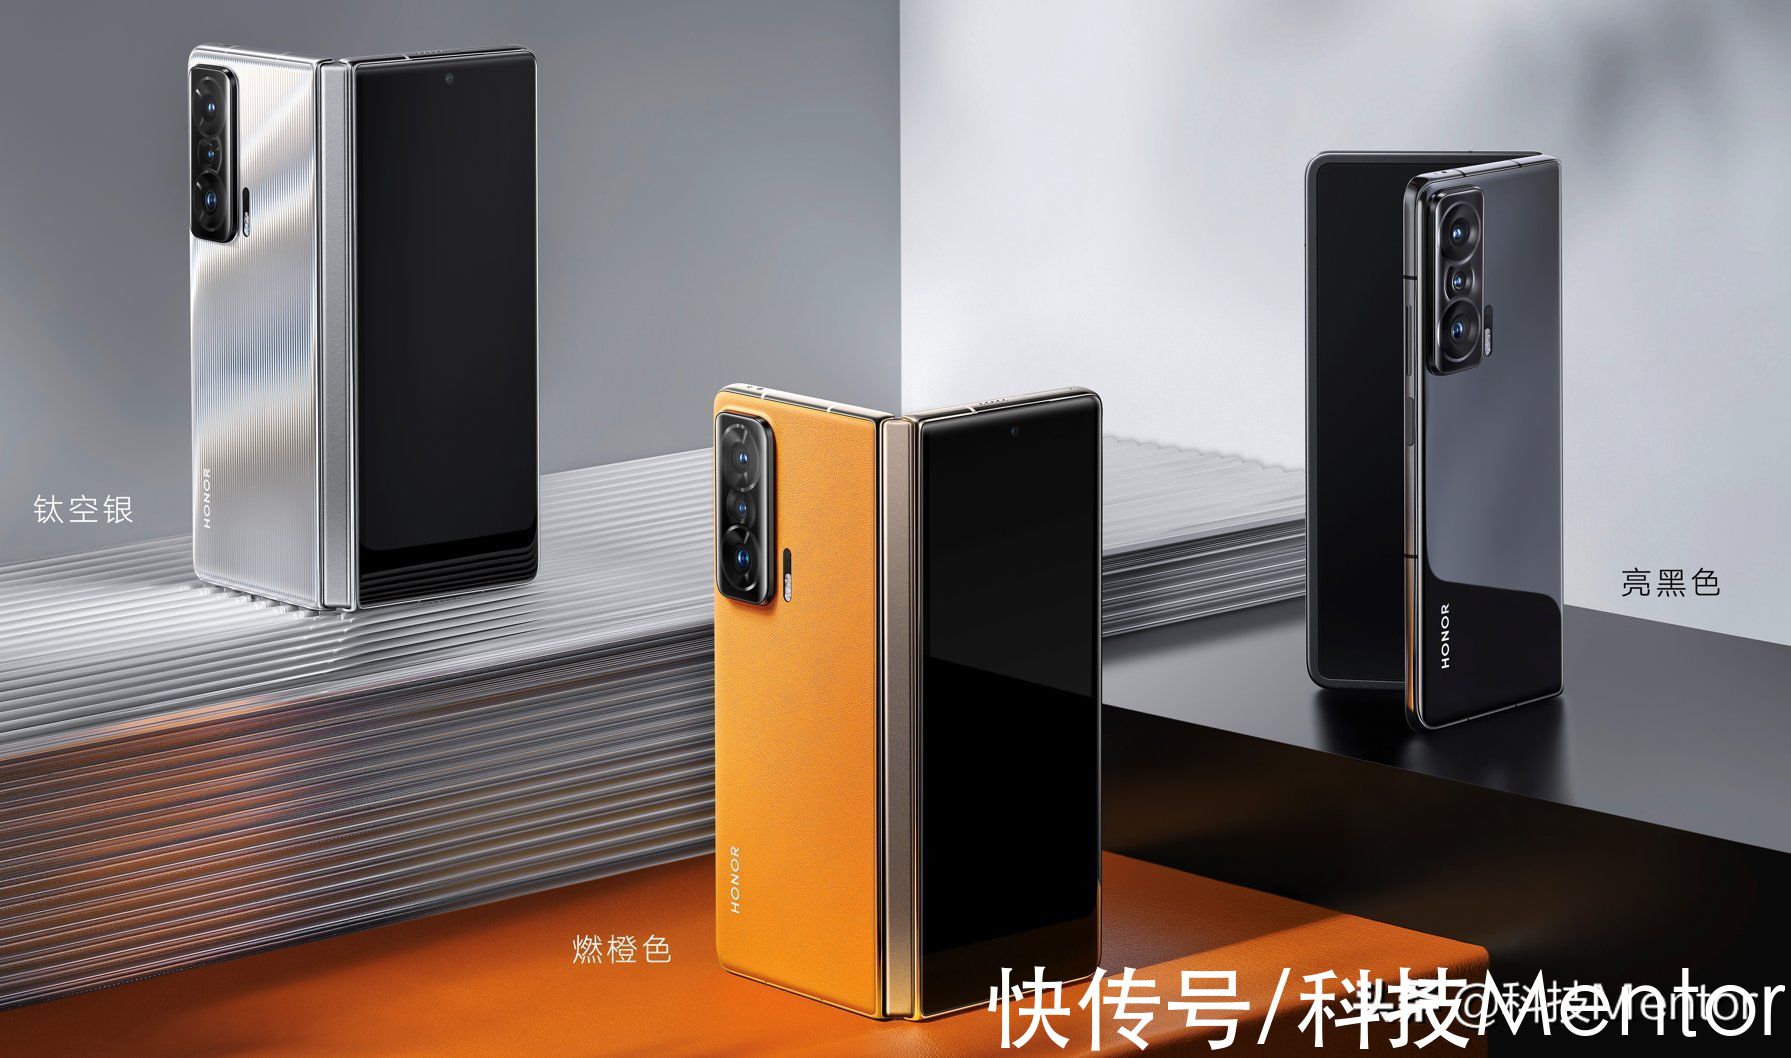 m荣耀Magic V正式发布：悬浮式水滴铰链，重新定义折叠屏手机